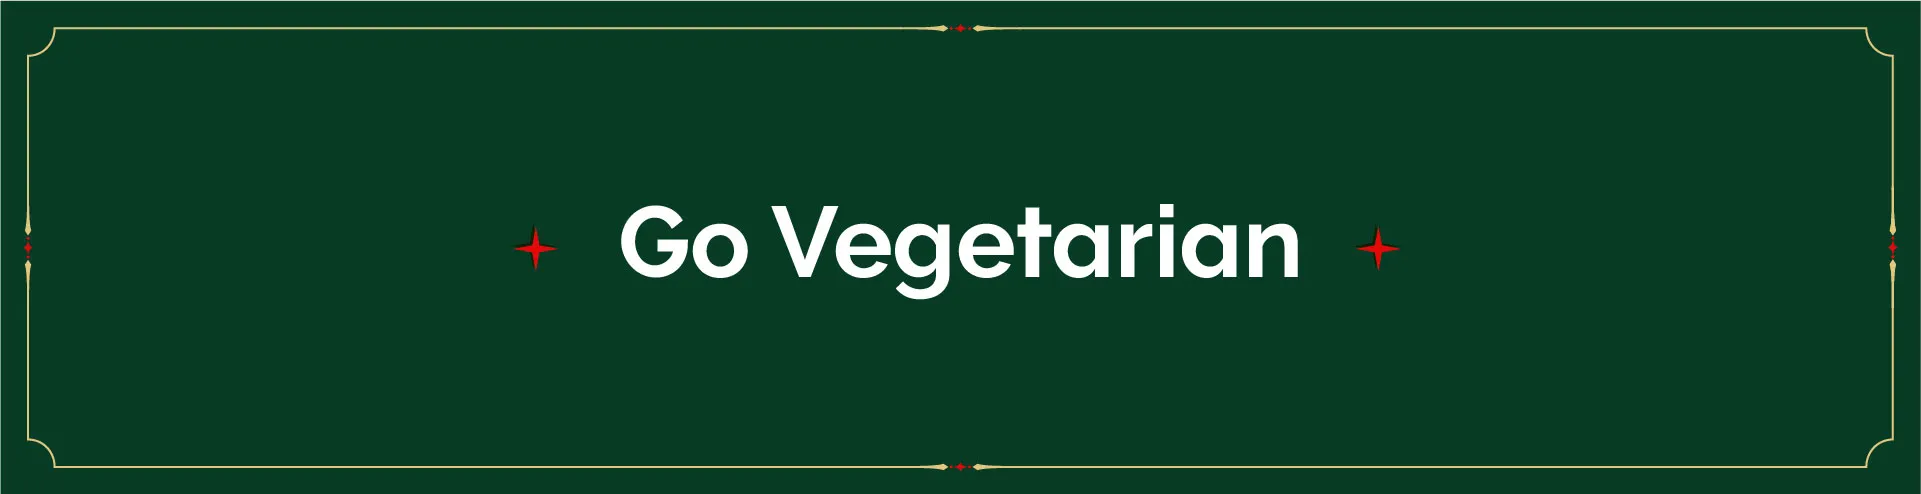 Full-width-banner-resizes-v2_full-width-gift-idea-vegetarian-desktop.webp